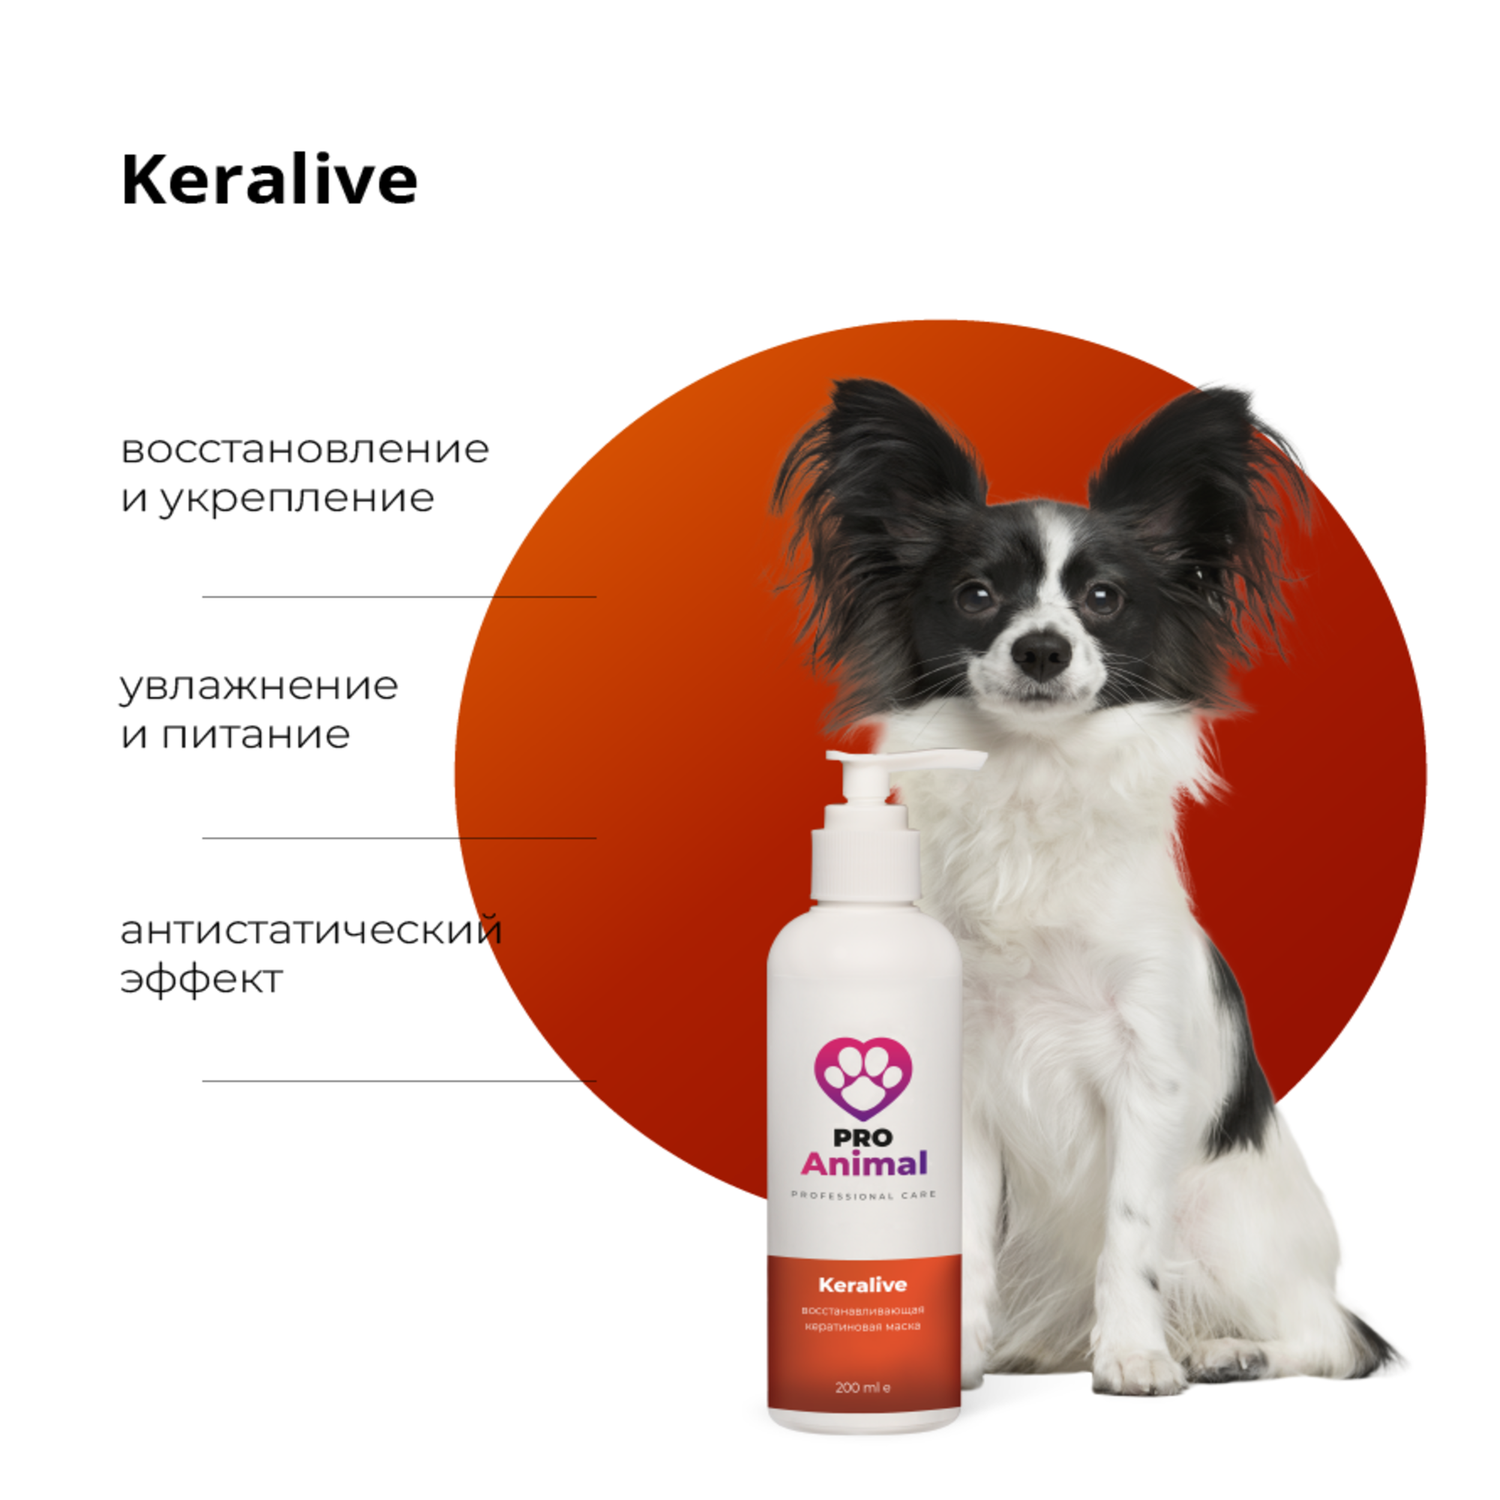 Кератиновая маска Keralive ProAnimal универсальный профессиональный восстанавливающий для собак - фото 2